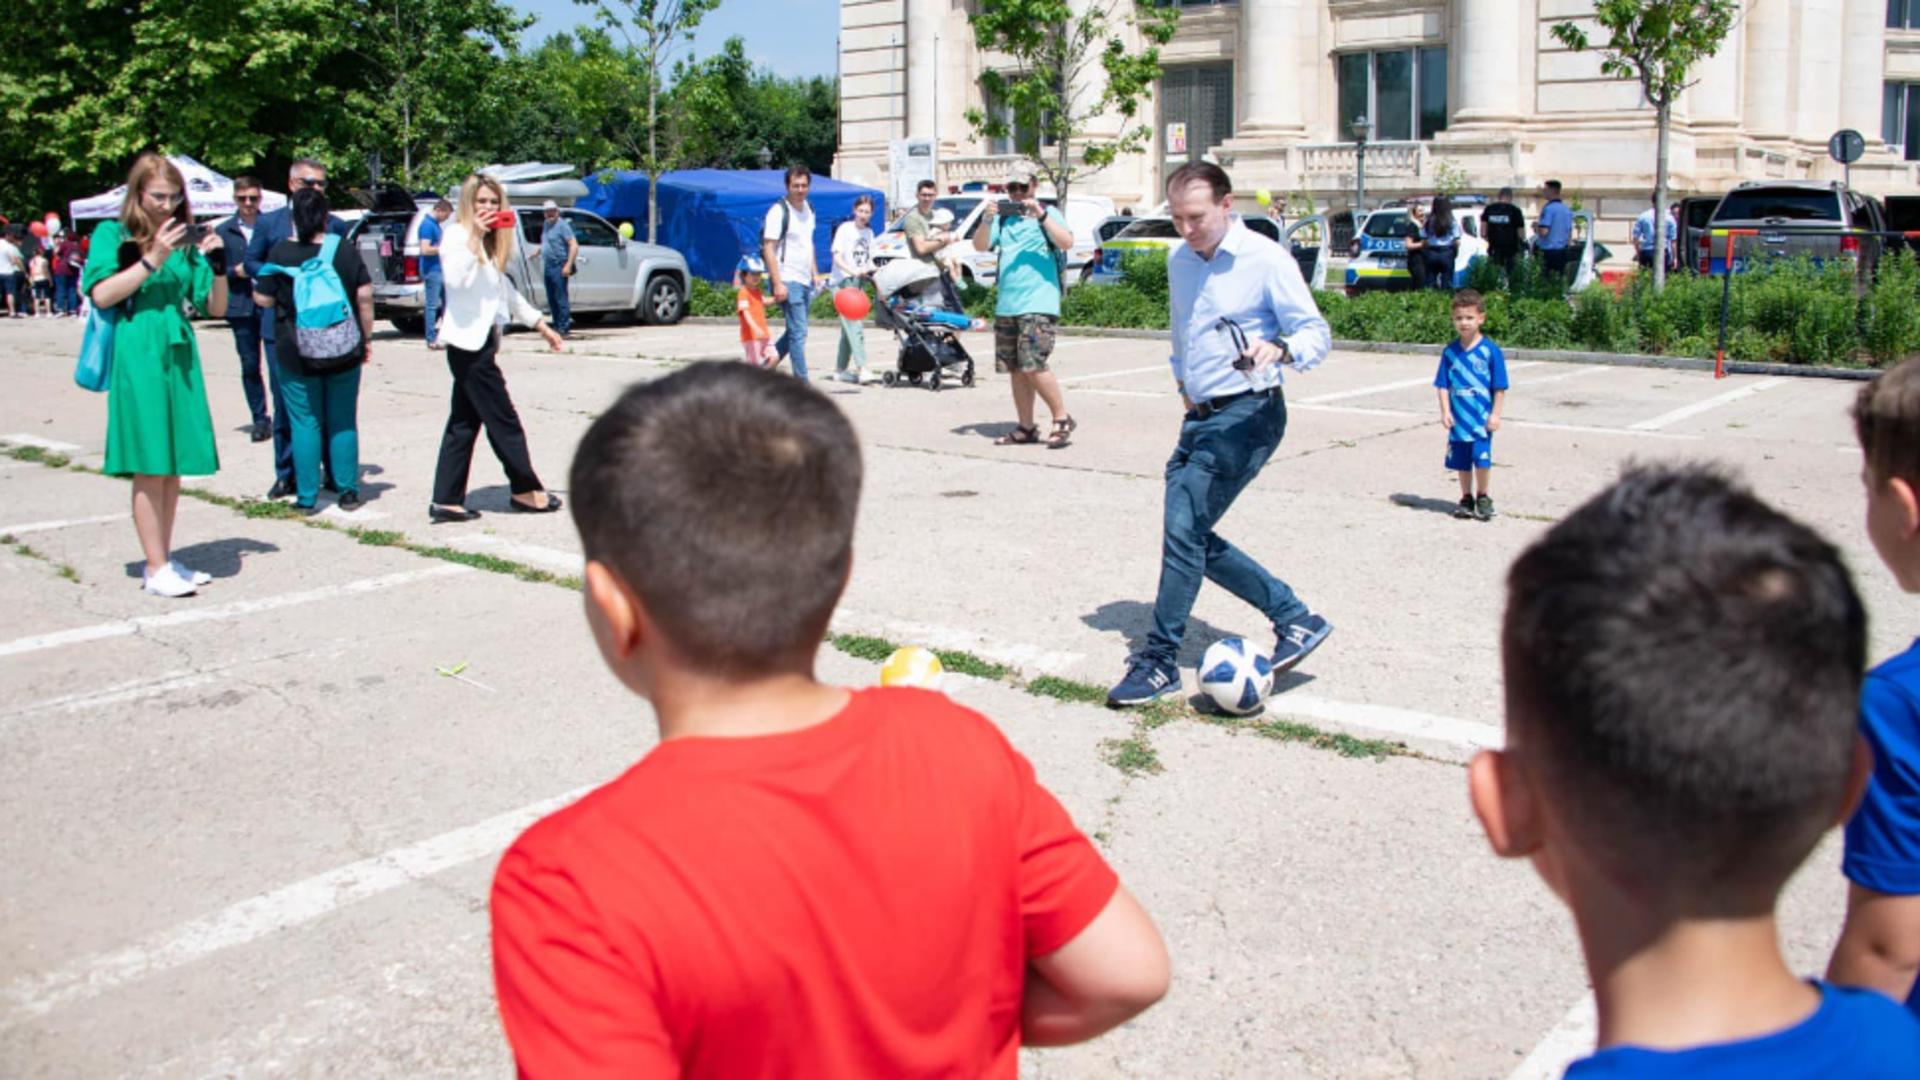 Marcel Ciolacu, Florin Cîțu, pe trotinetă și cu mingea de fotbal de 1 iunie, la Parlament Foto: Facebook.com